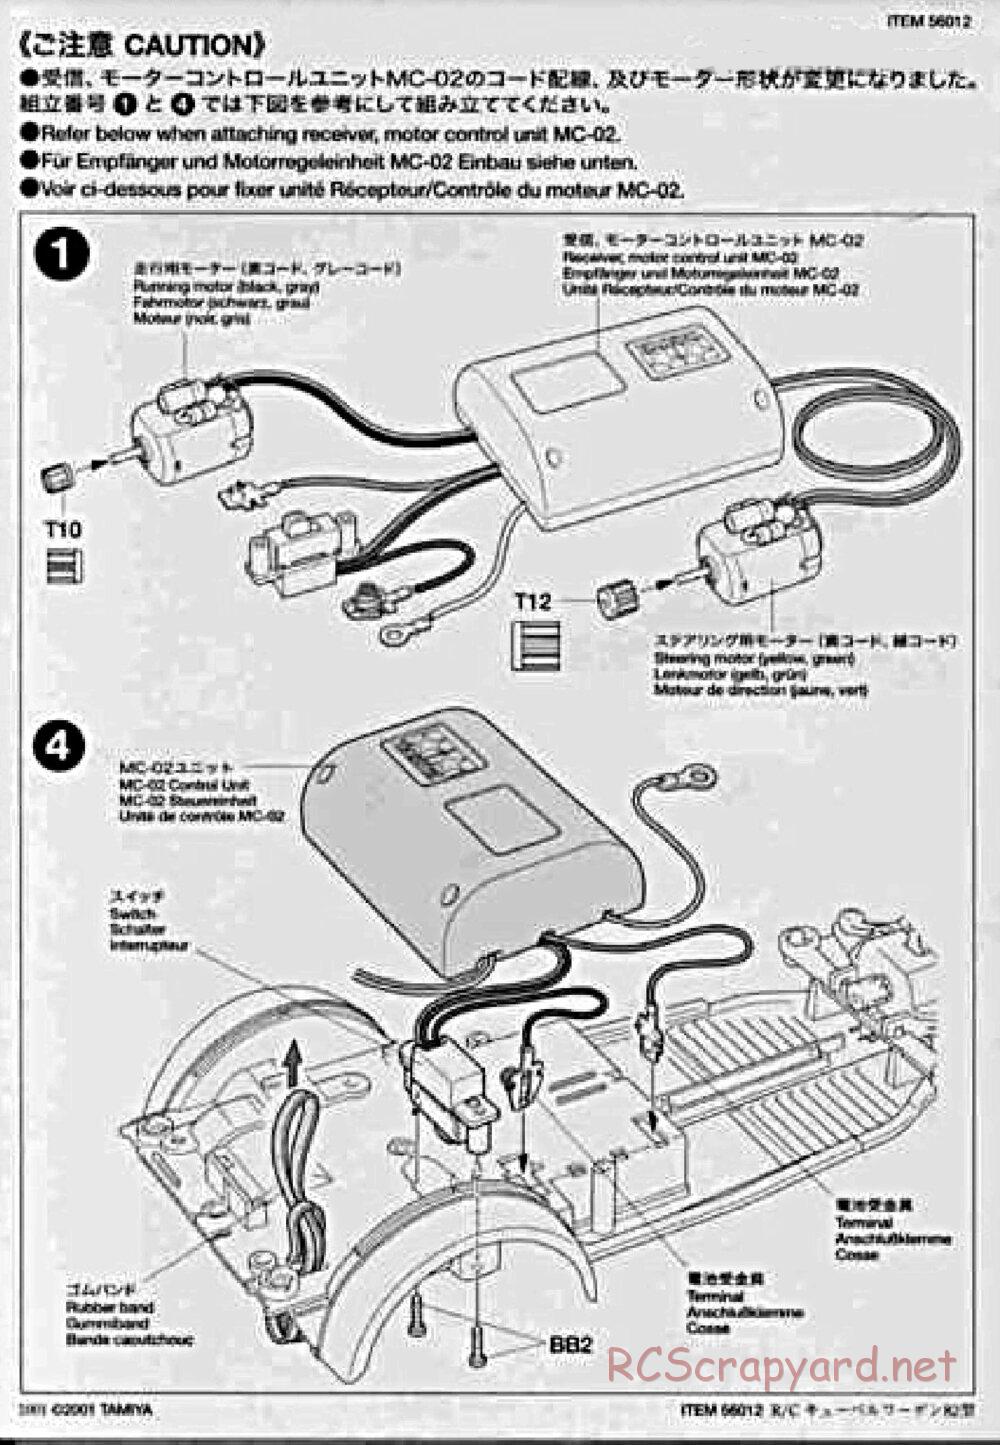 Tamiya - Kubelwagen Type 82 Chassis - Manual - Page 24